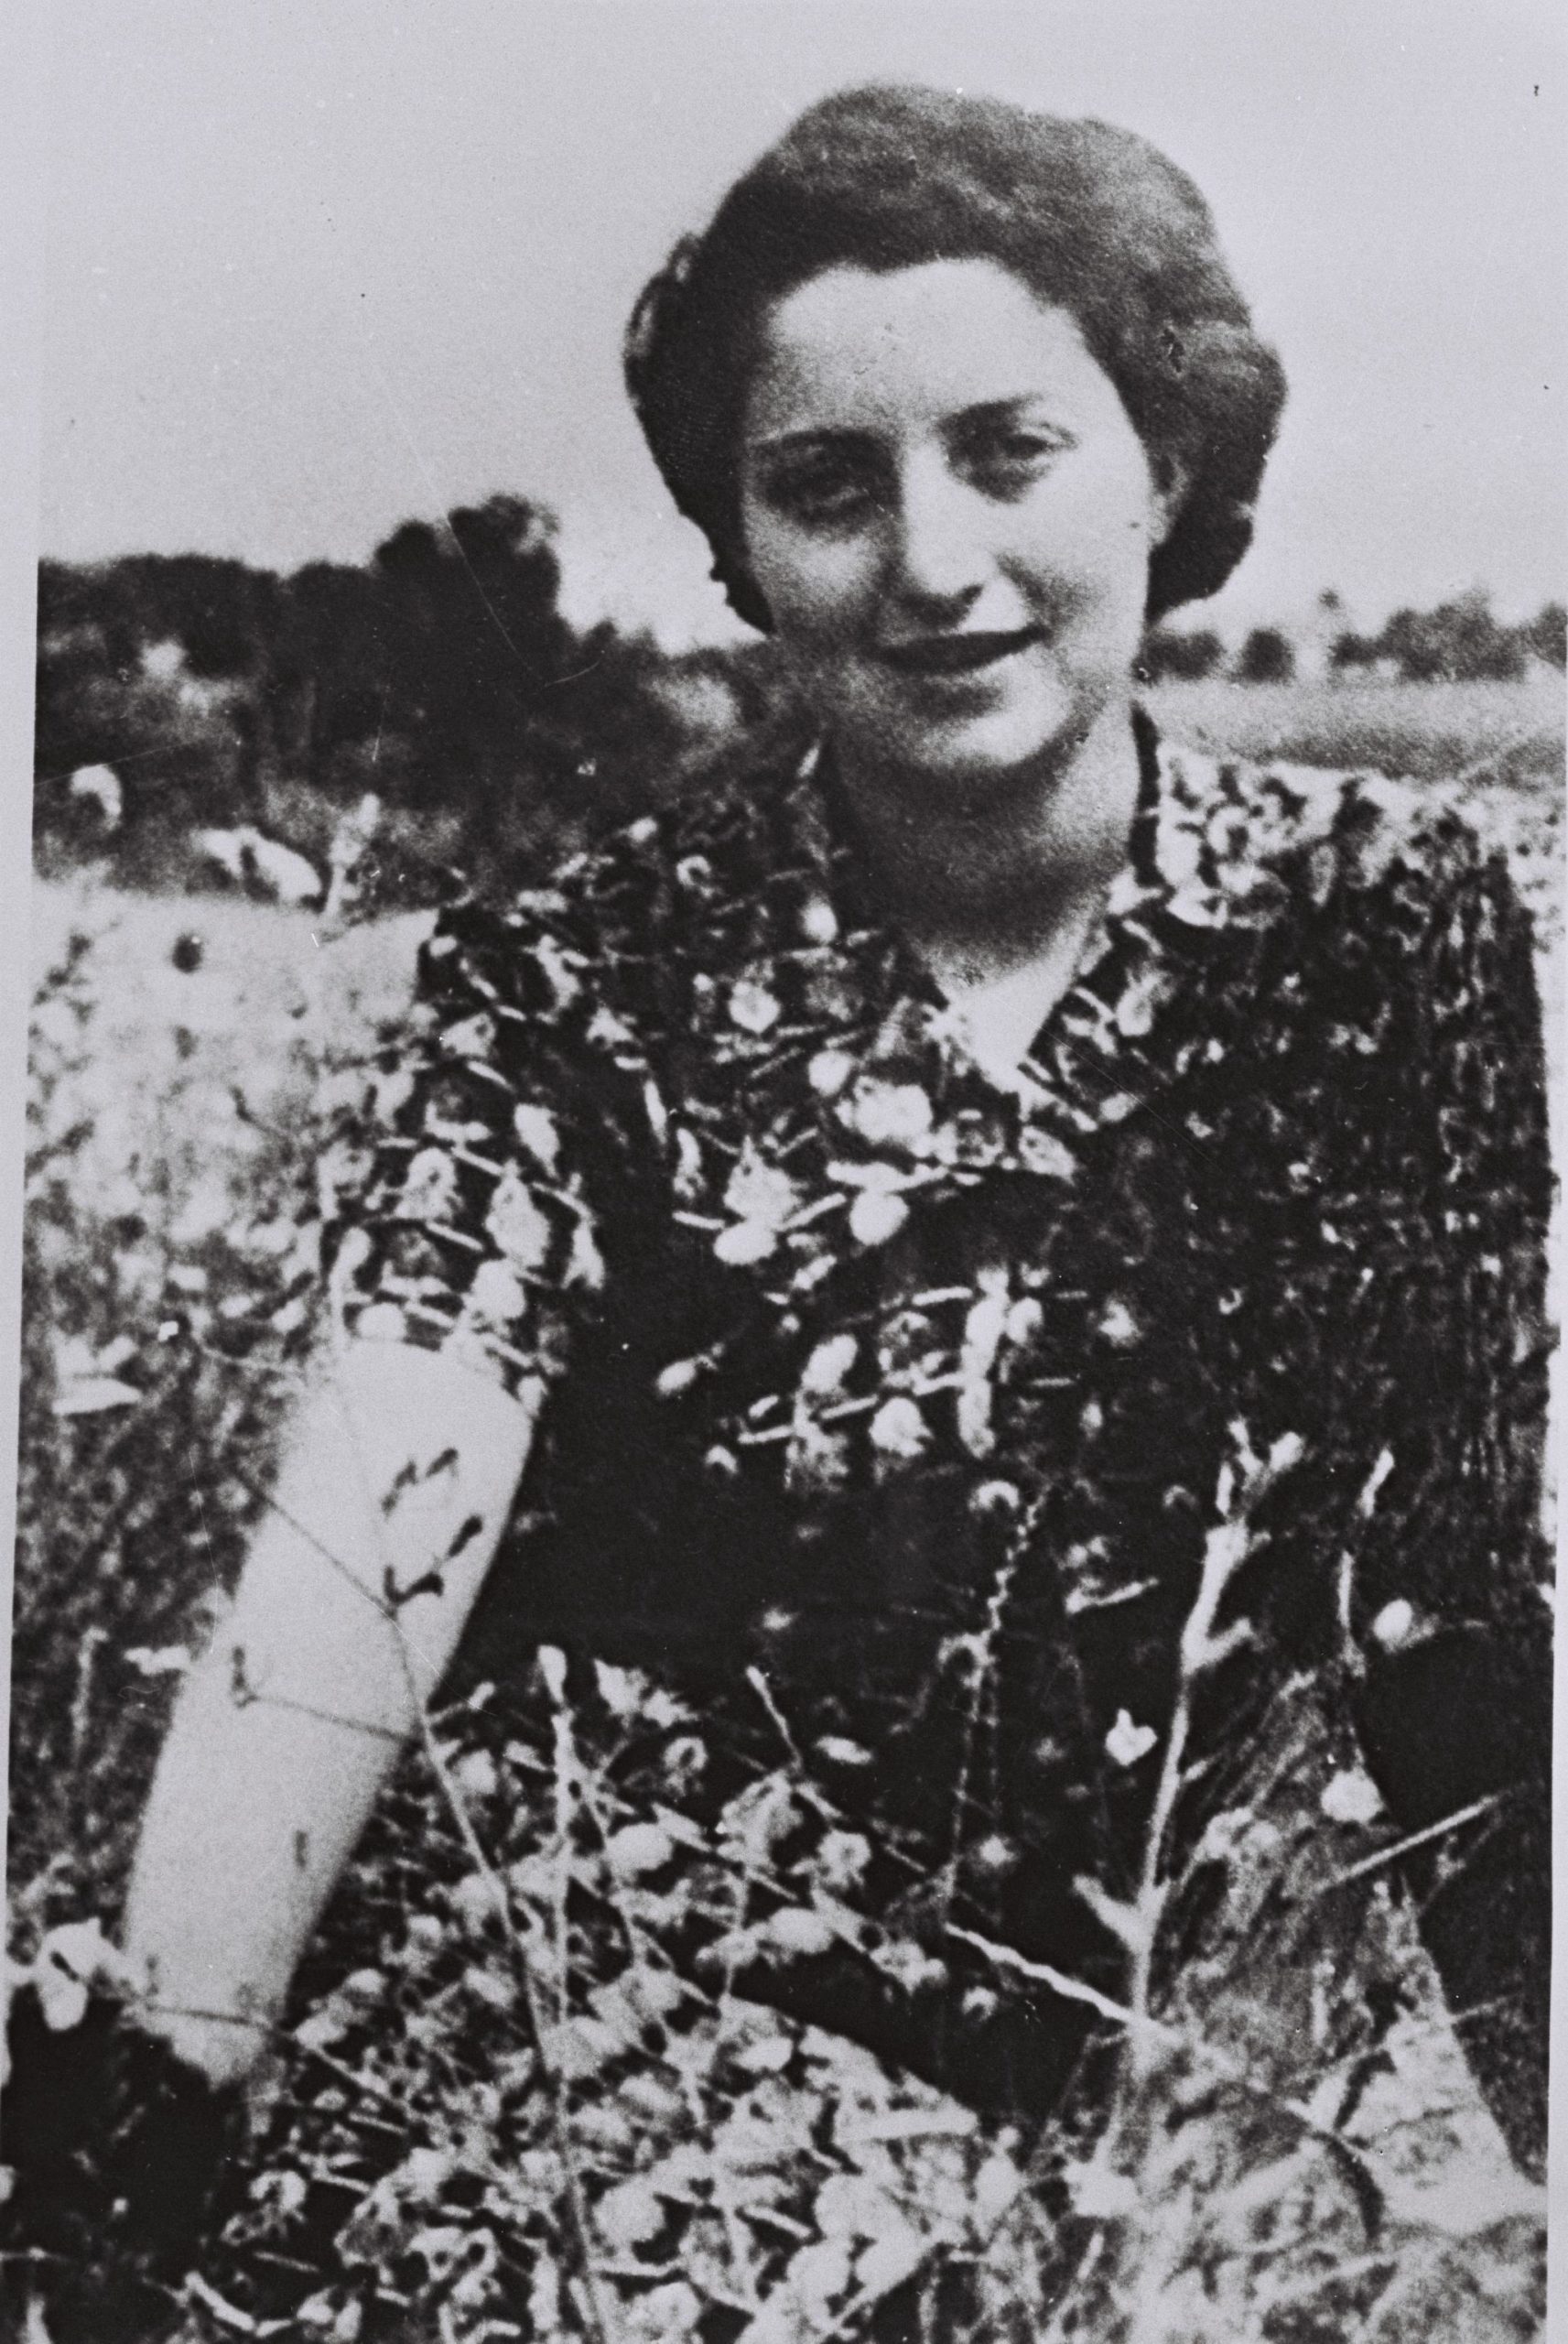 Hannah Senesh, 1921-1944